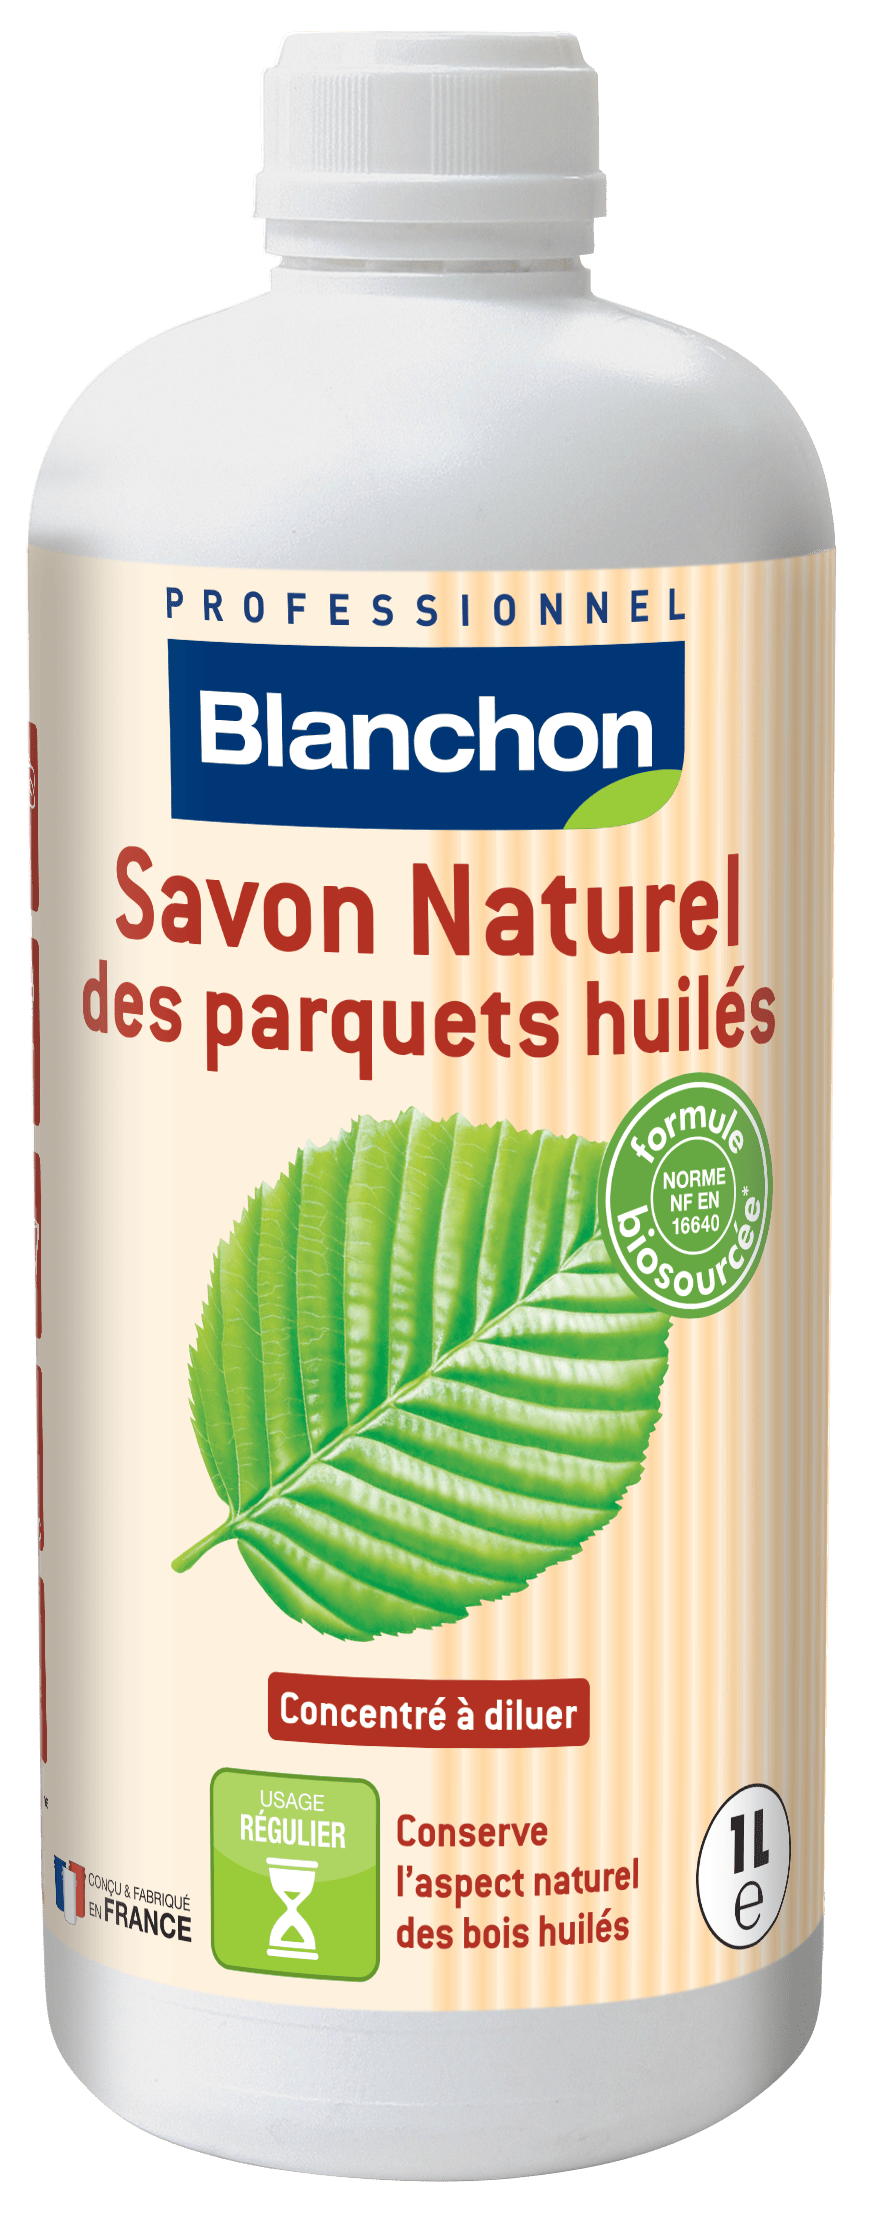 Spray nettoyant doux Blanchon Lagoon 0.5L pour parquet vitrifié et huilé